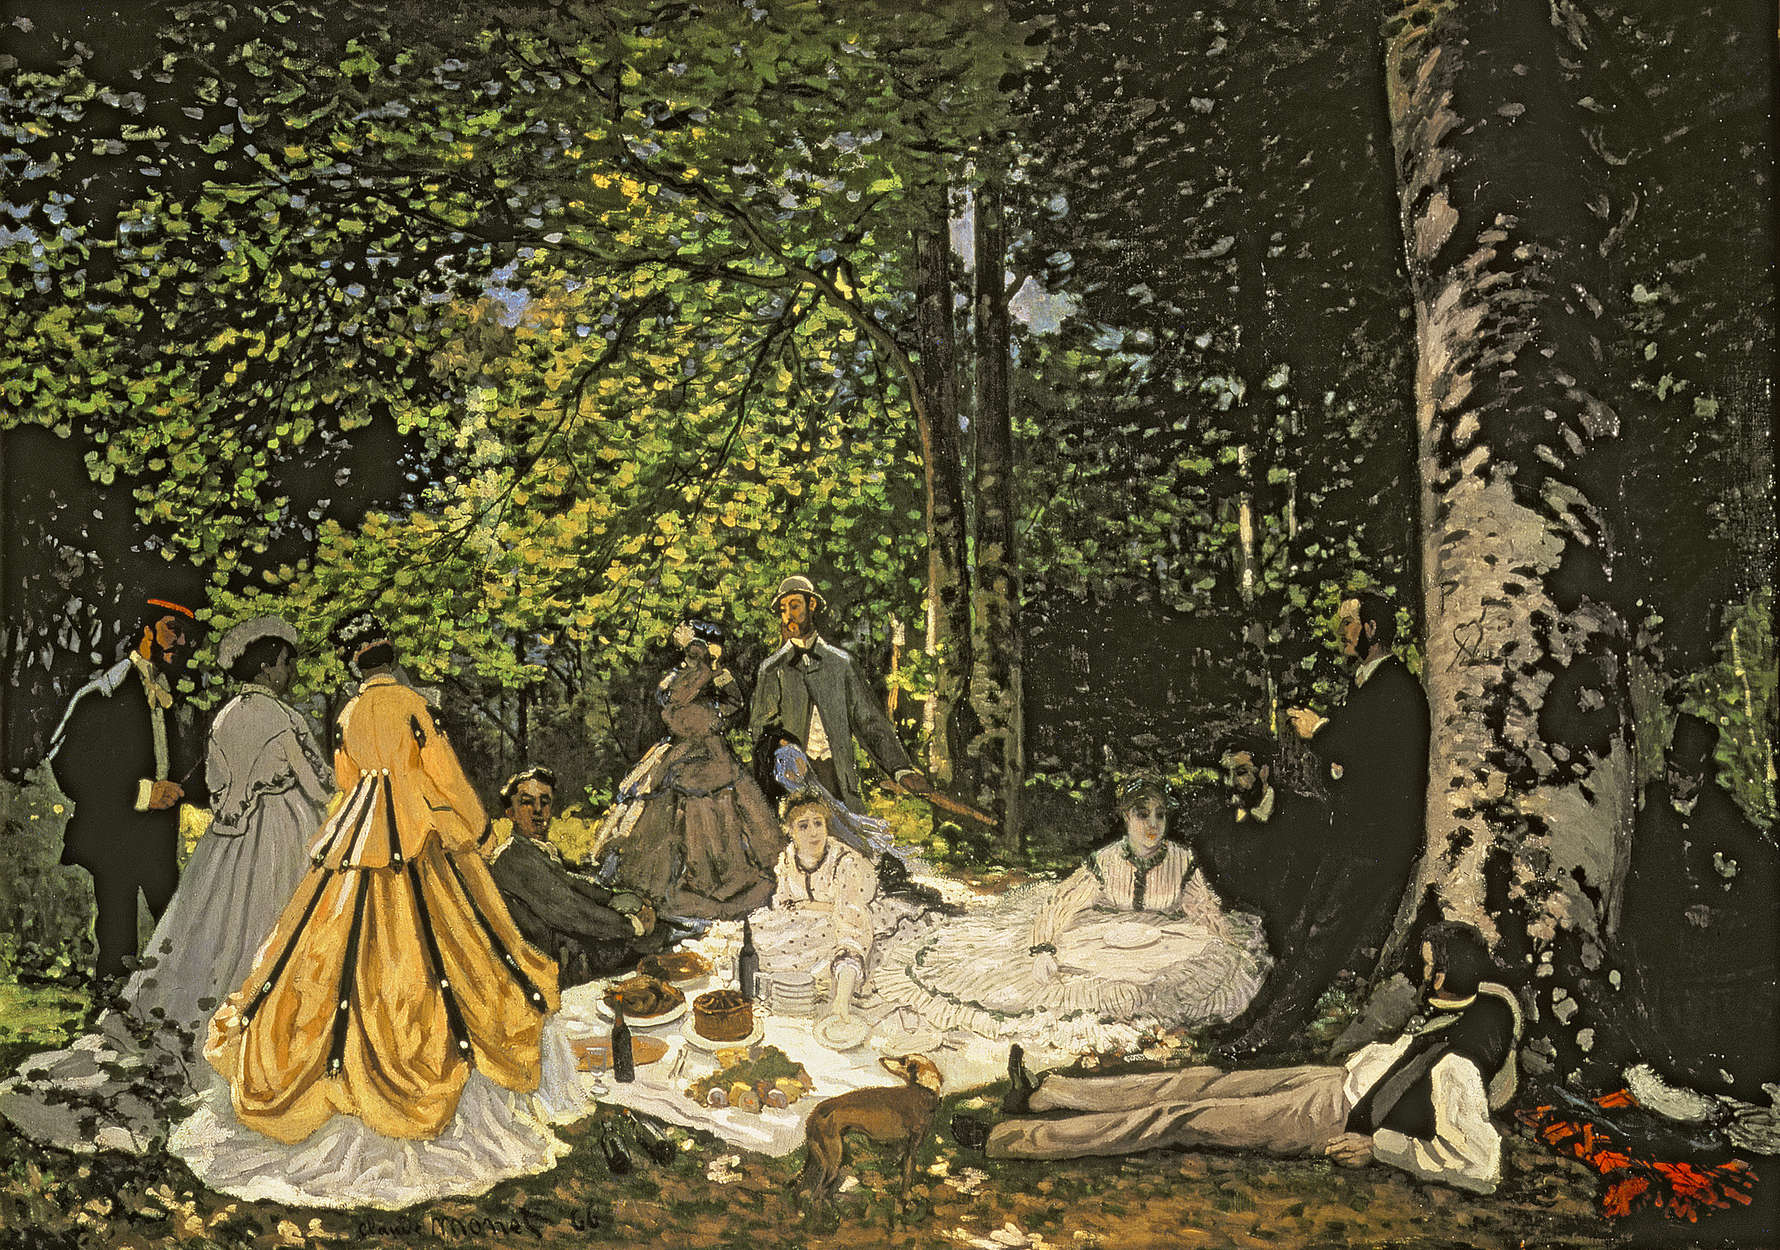             Papier peint panoramique "Petit déjeuner dans la verdure" de Claude Monet
        